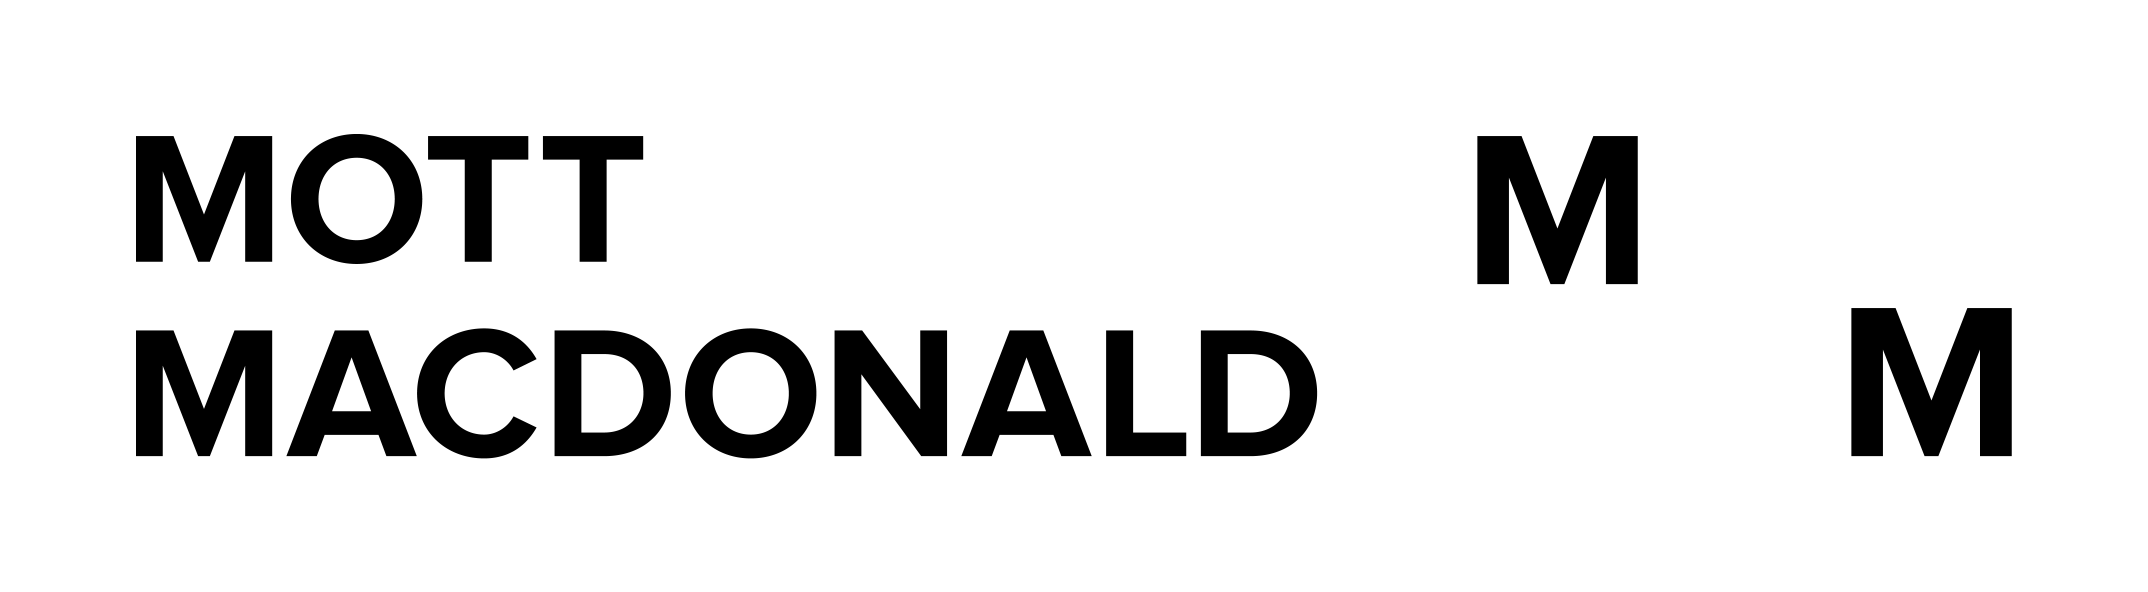 Spnsor logo